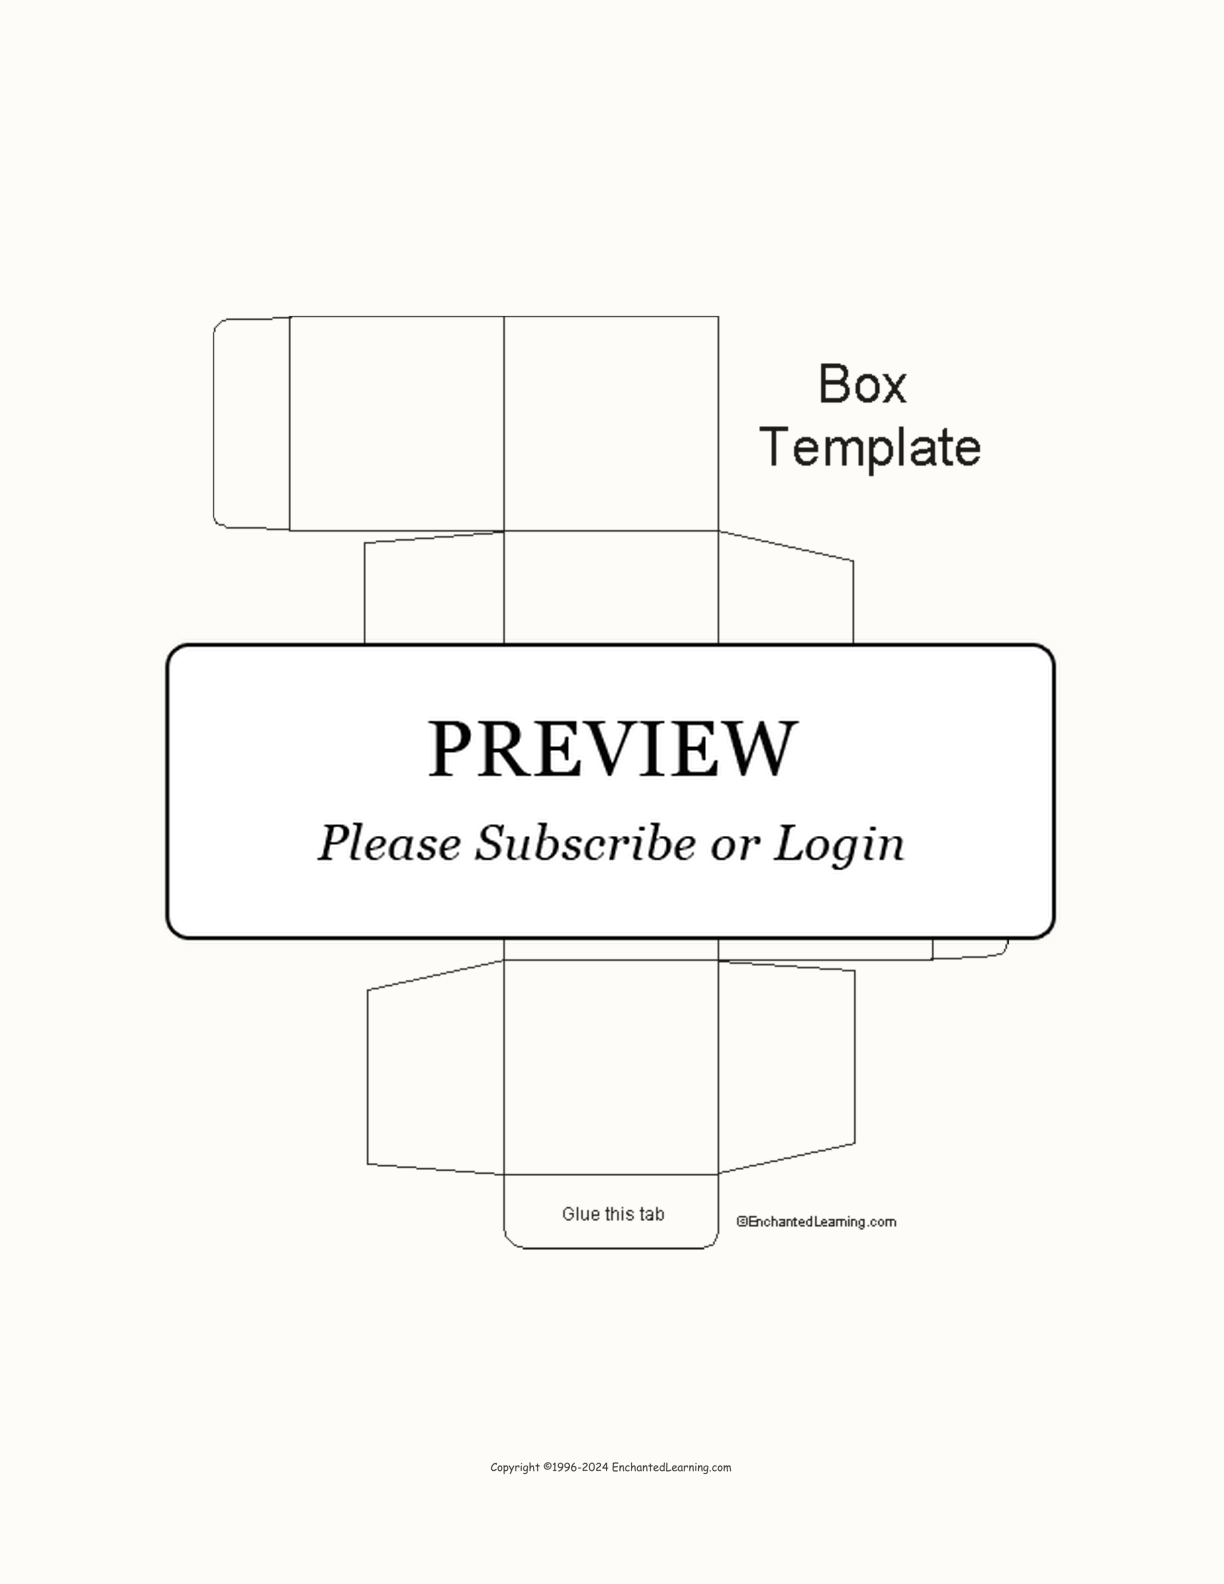 Box Template Printout interactive printout page 1